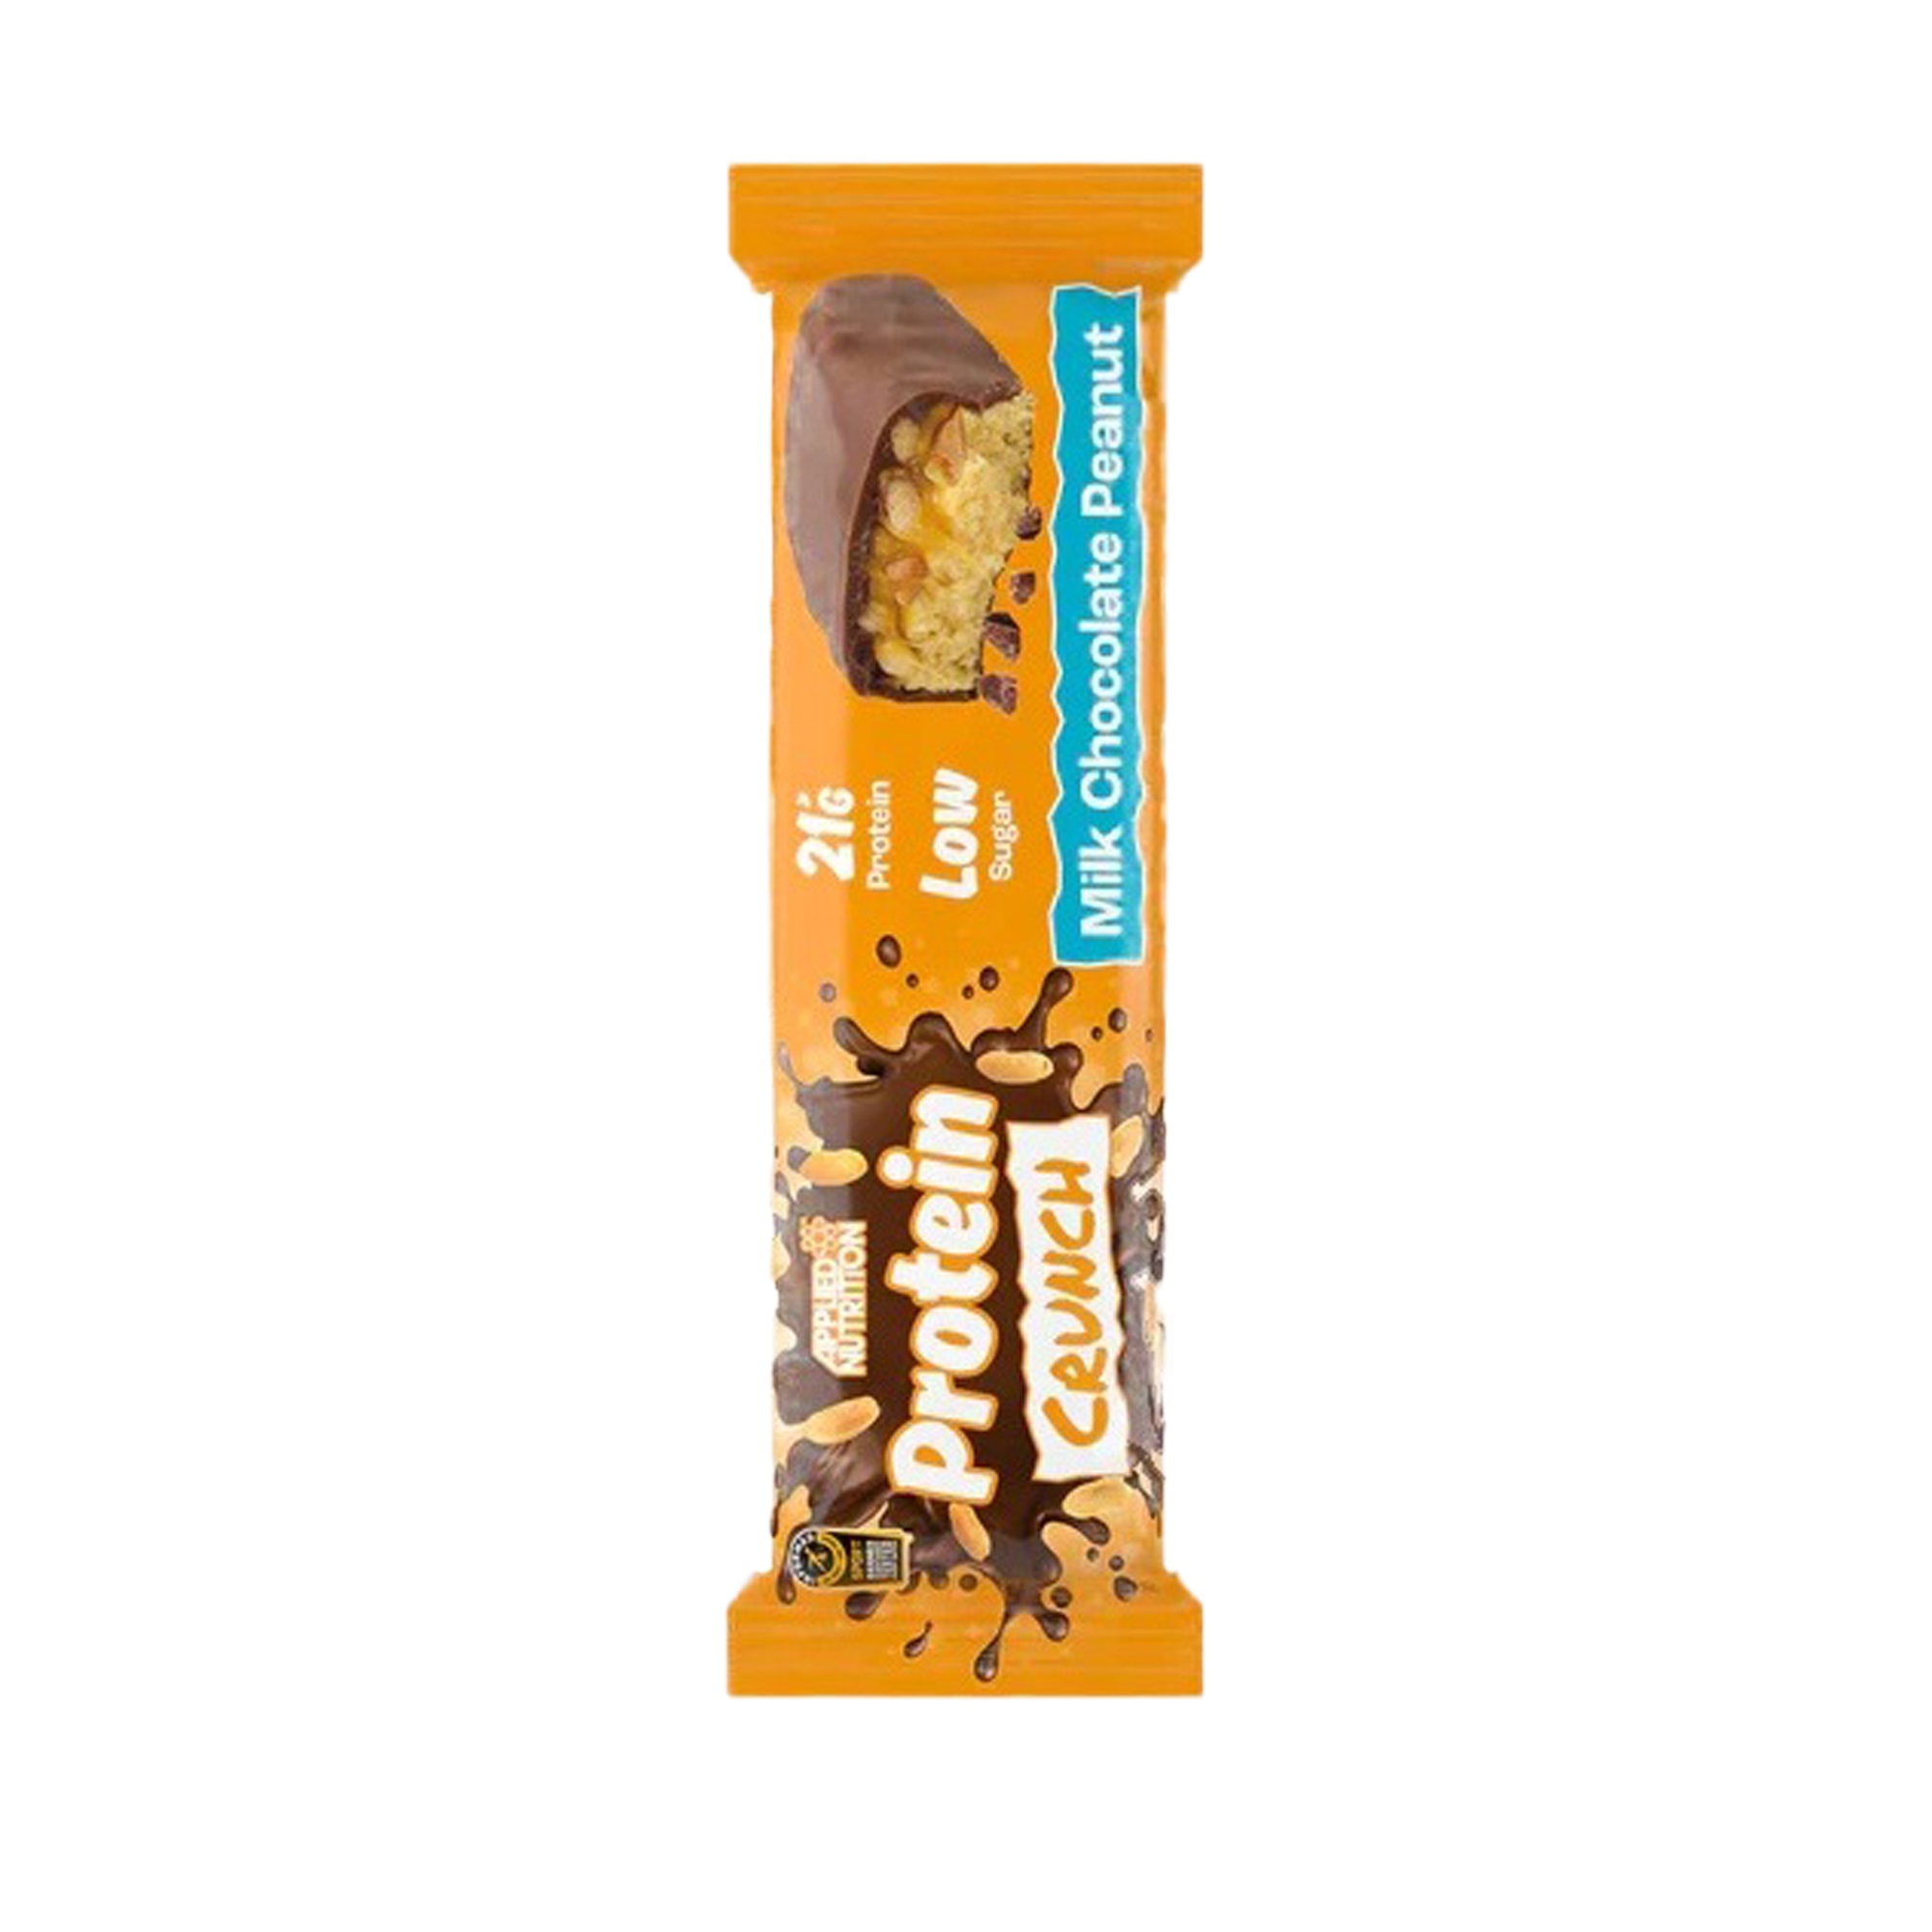 APPLIED NUTRITION Protein Crunch Bar Milk Chocolate Peanut 65g 21g protein